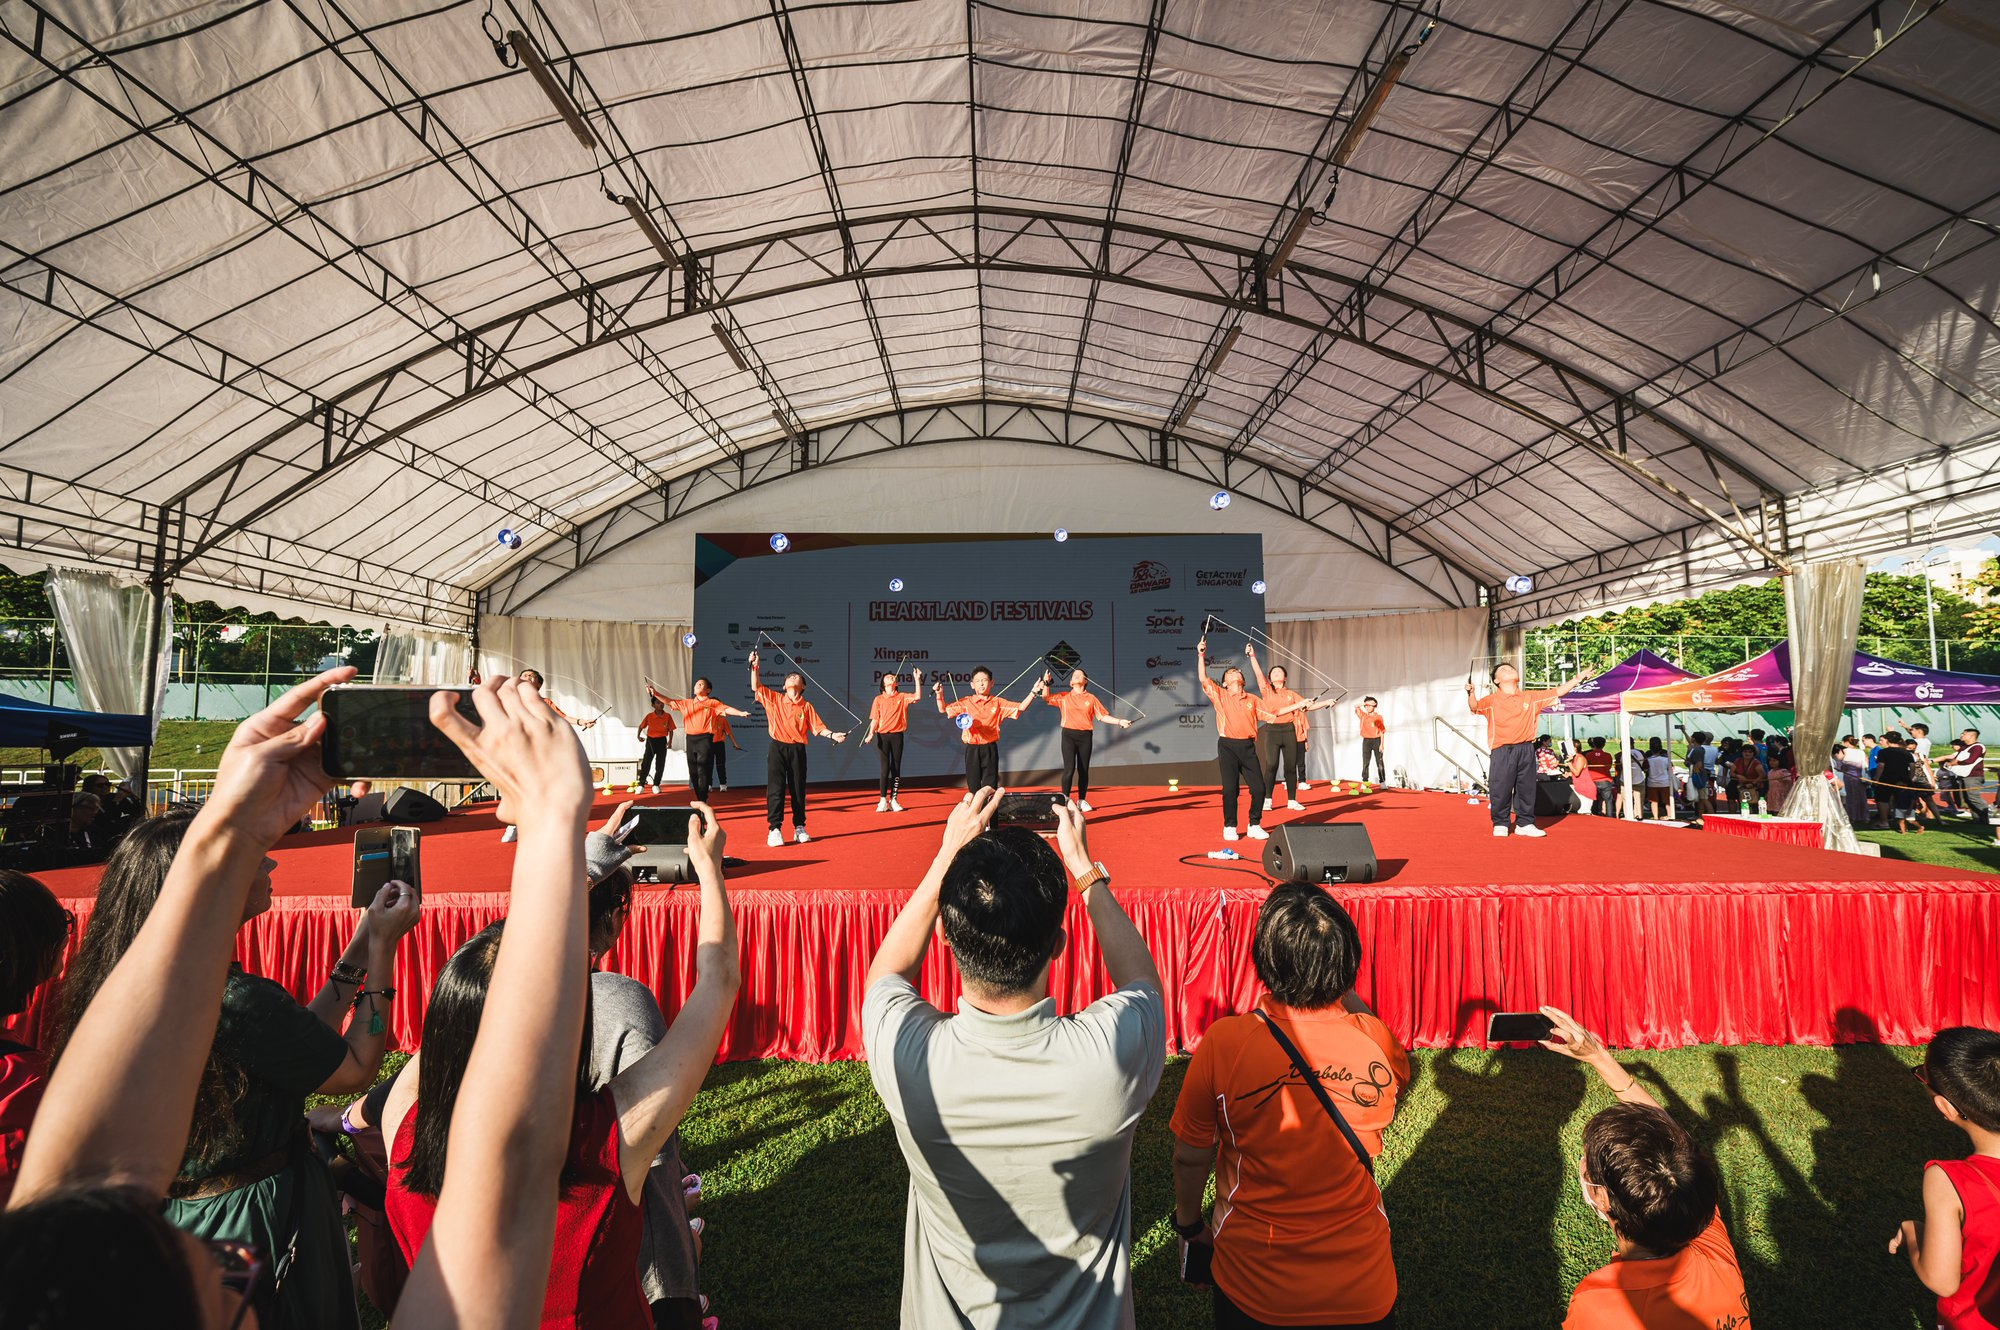 Heartland Festivals @ Jurong West Sport Center (234)